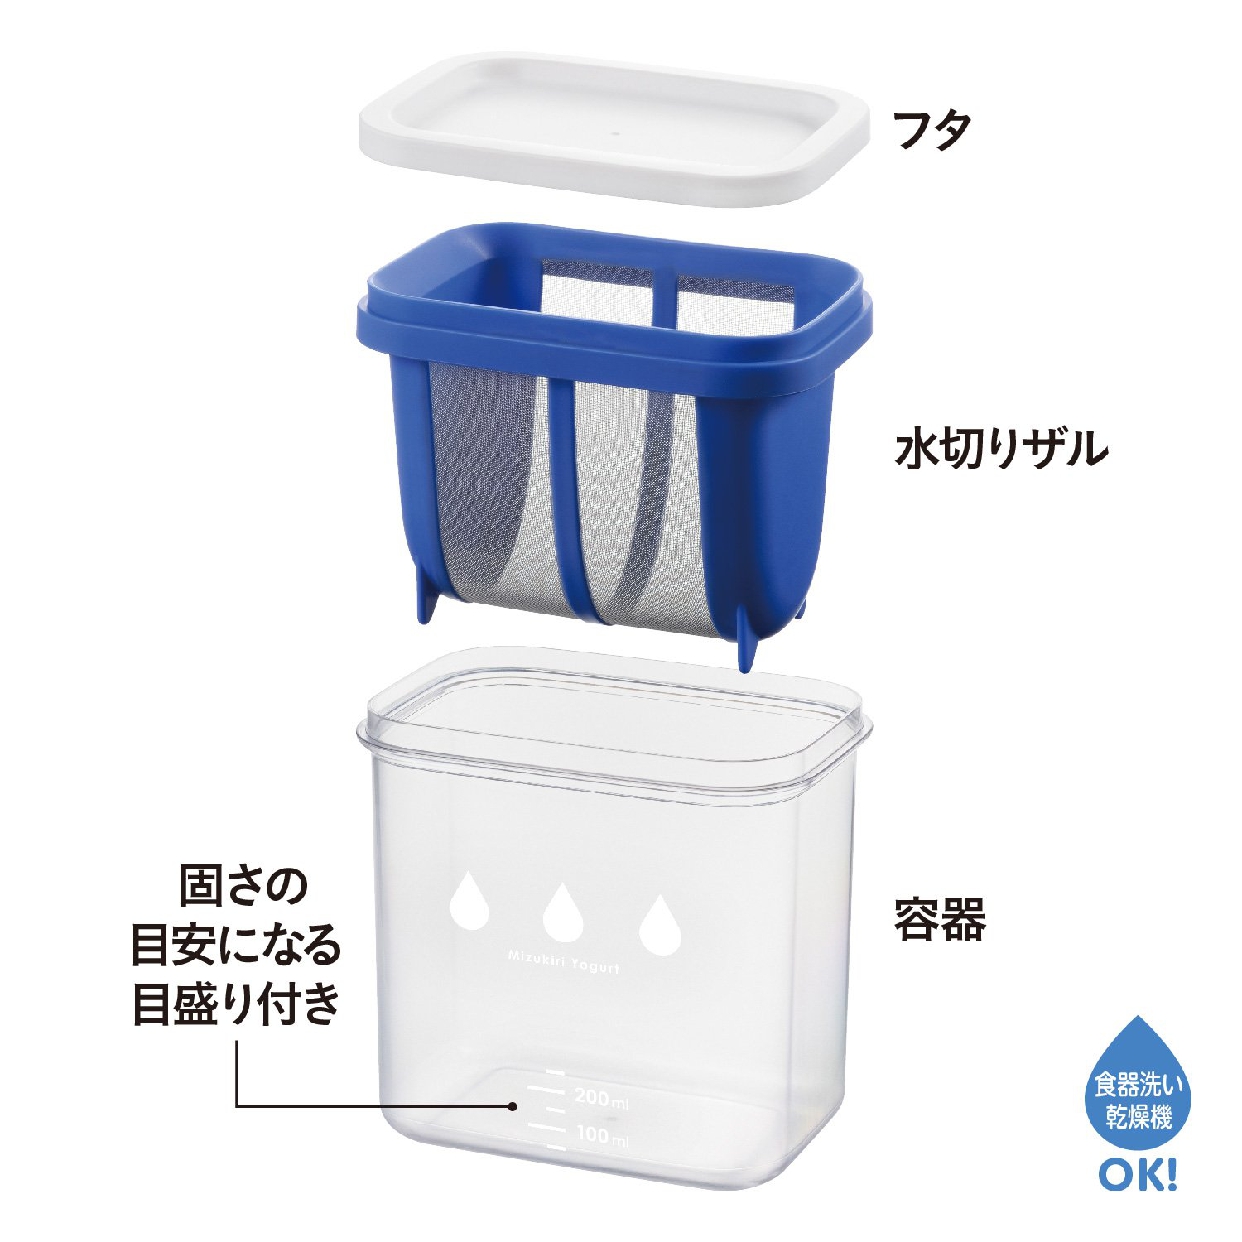 曙産業(AKEBONO) 水切りヨーグルトができる容器 ST-3000 ブルーの商品画像4 